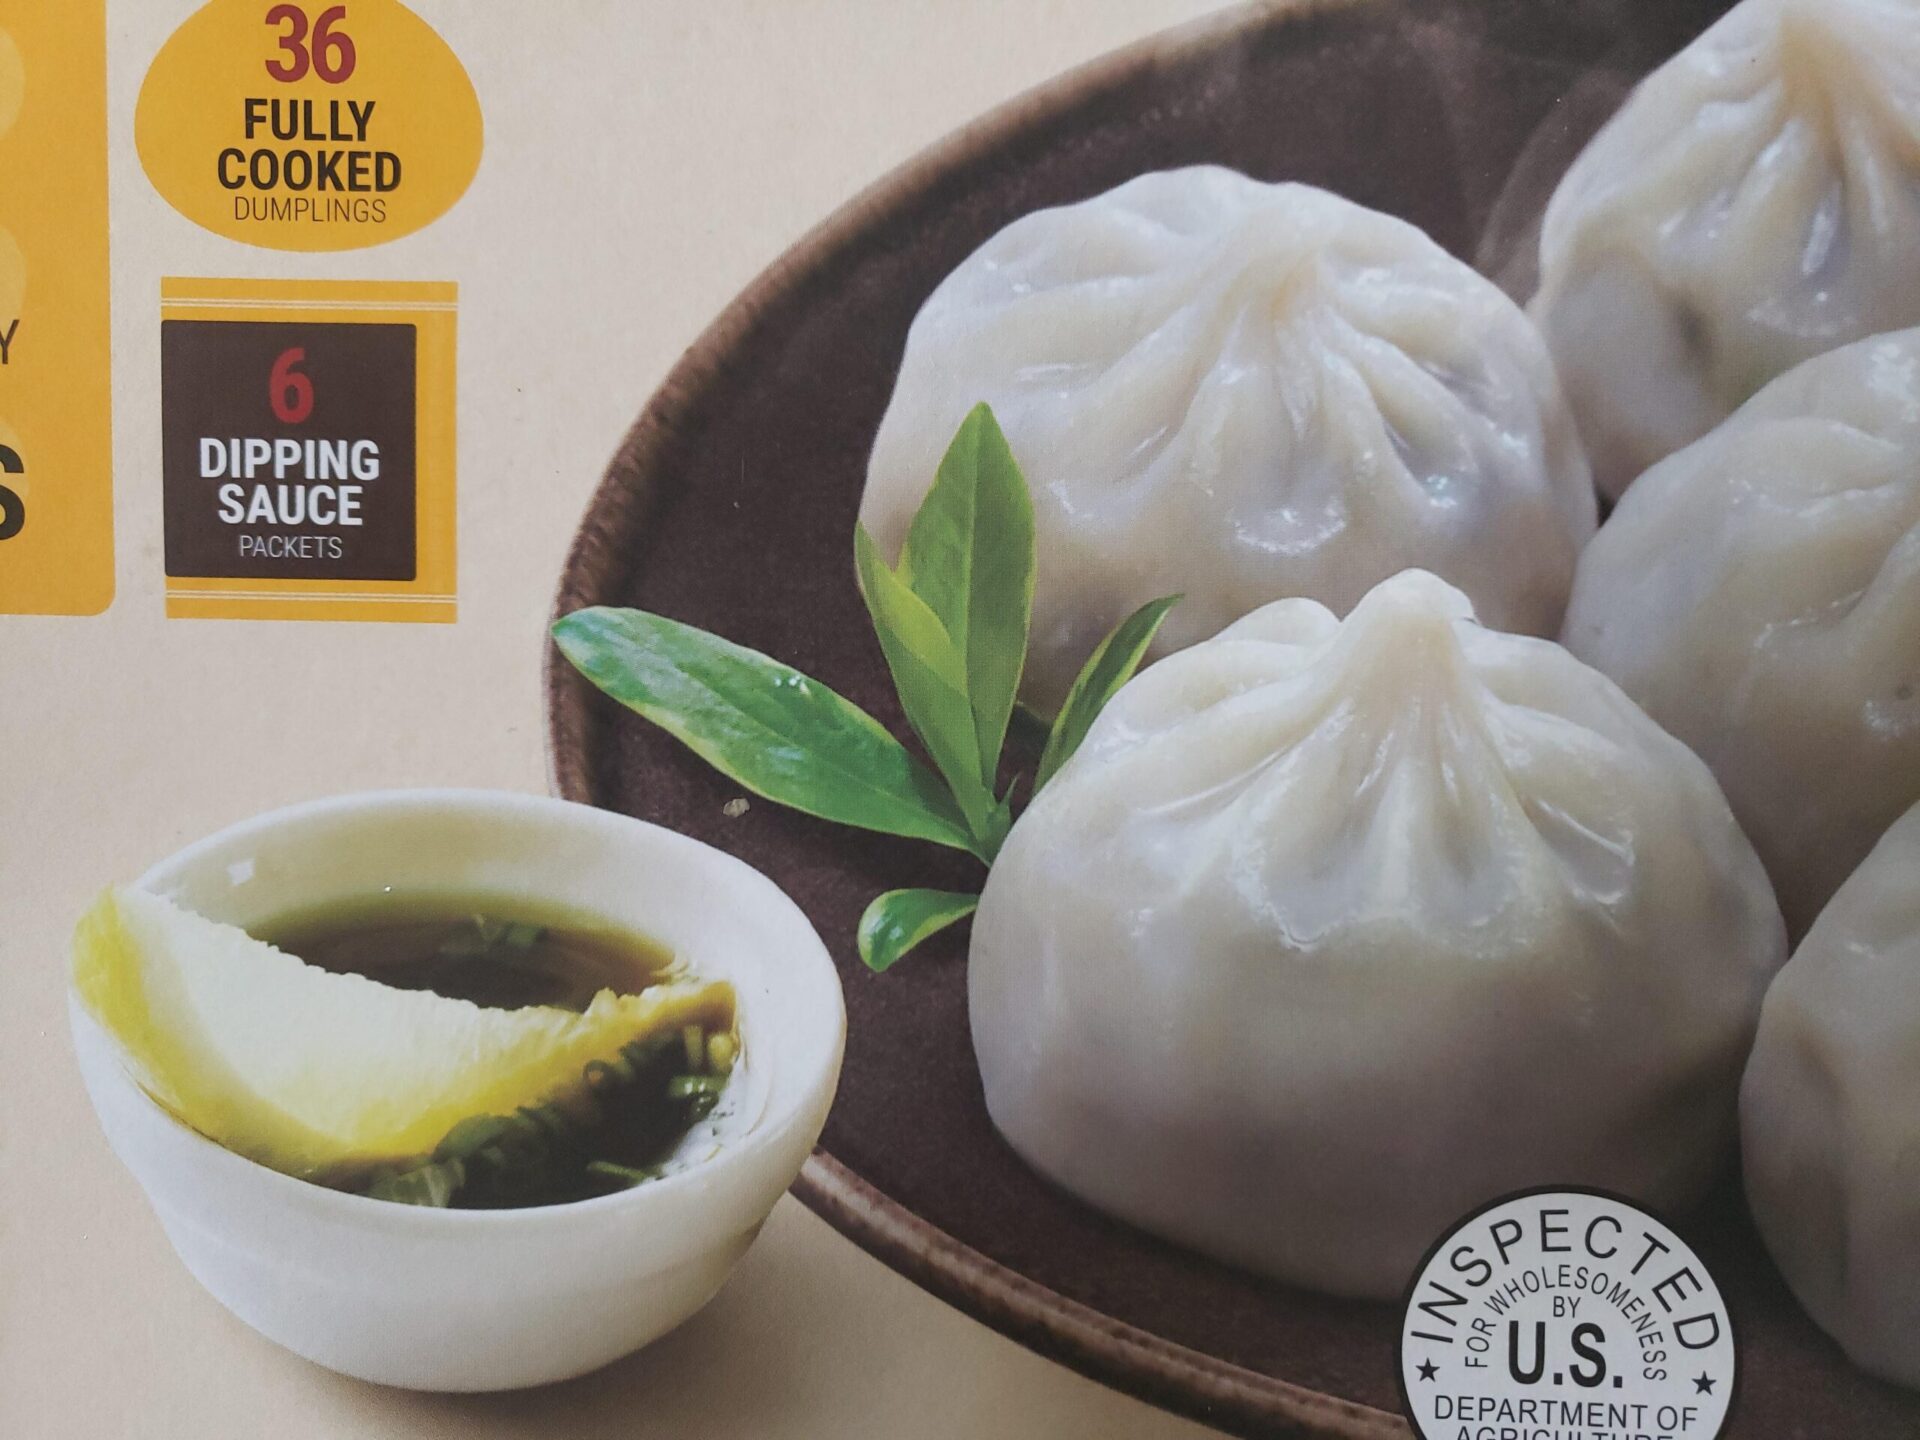 Costco-Dumplings-Box